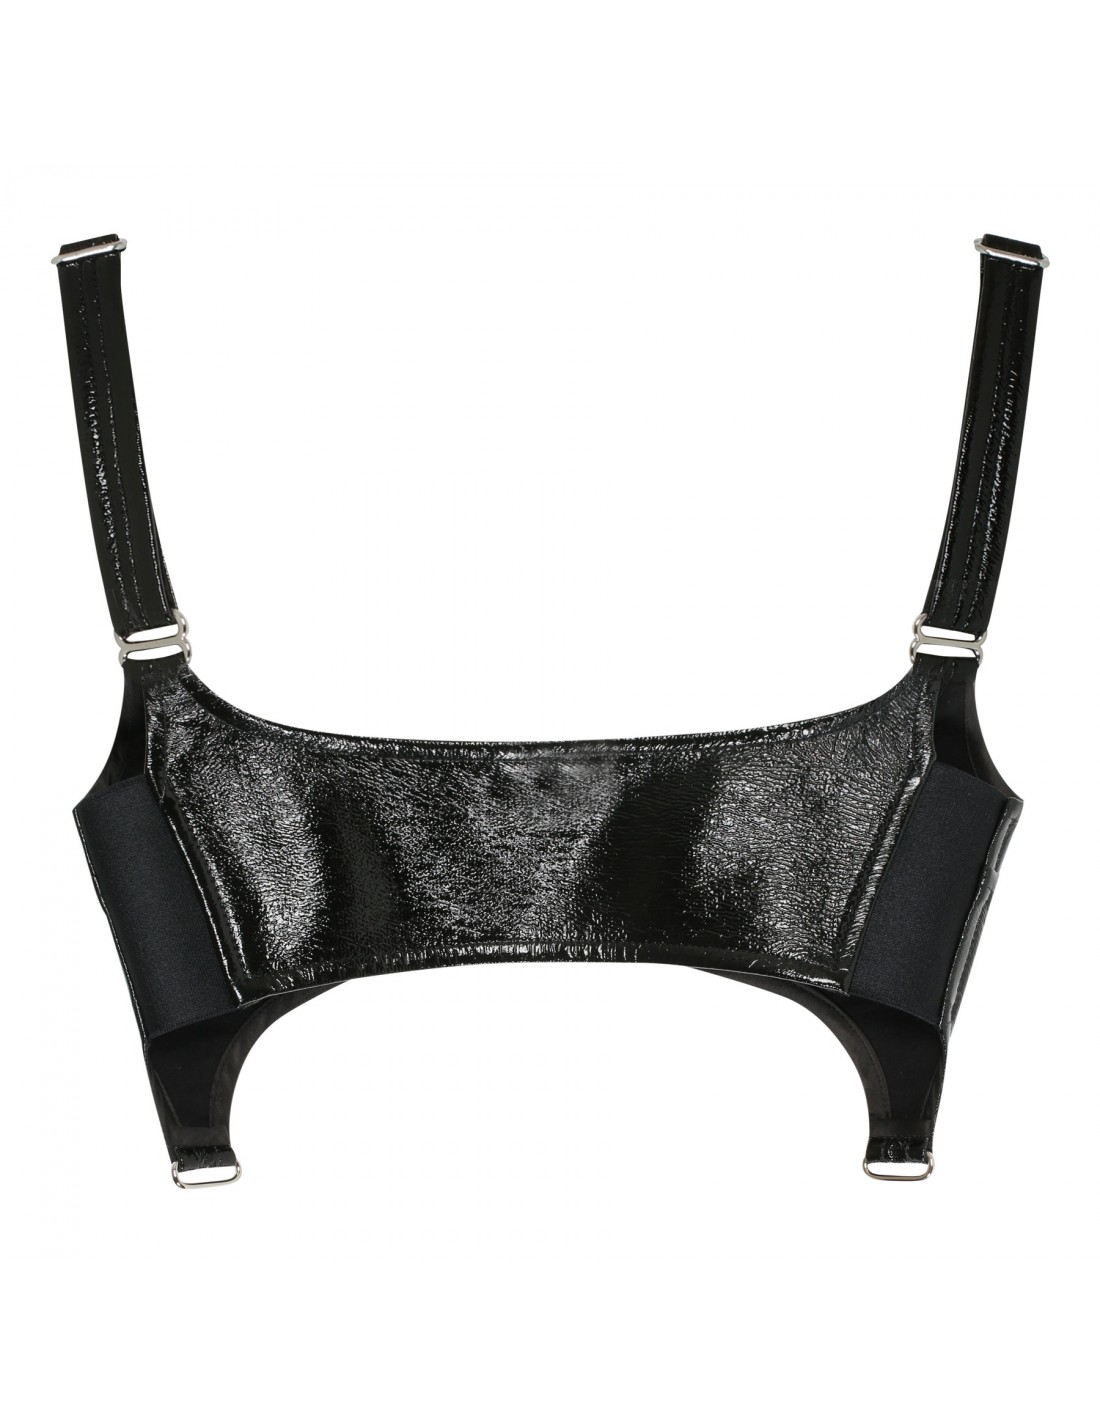 Black vinyl suspenders bra